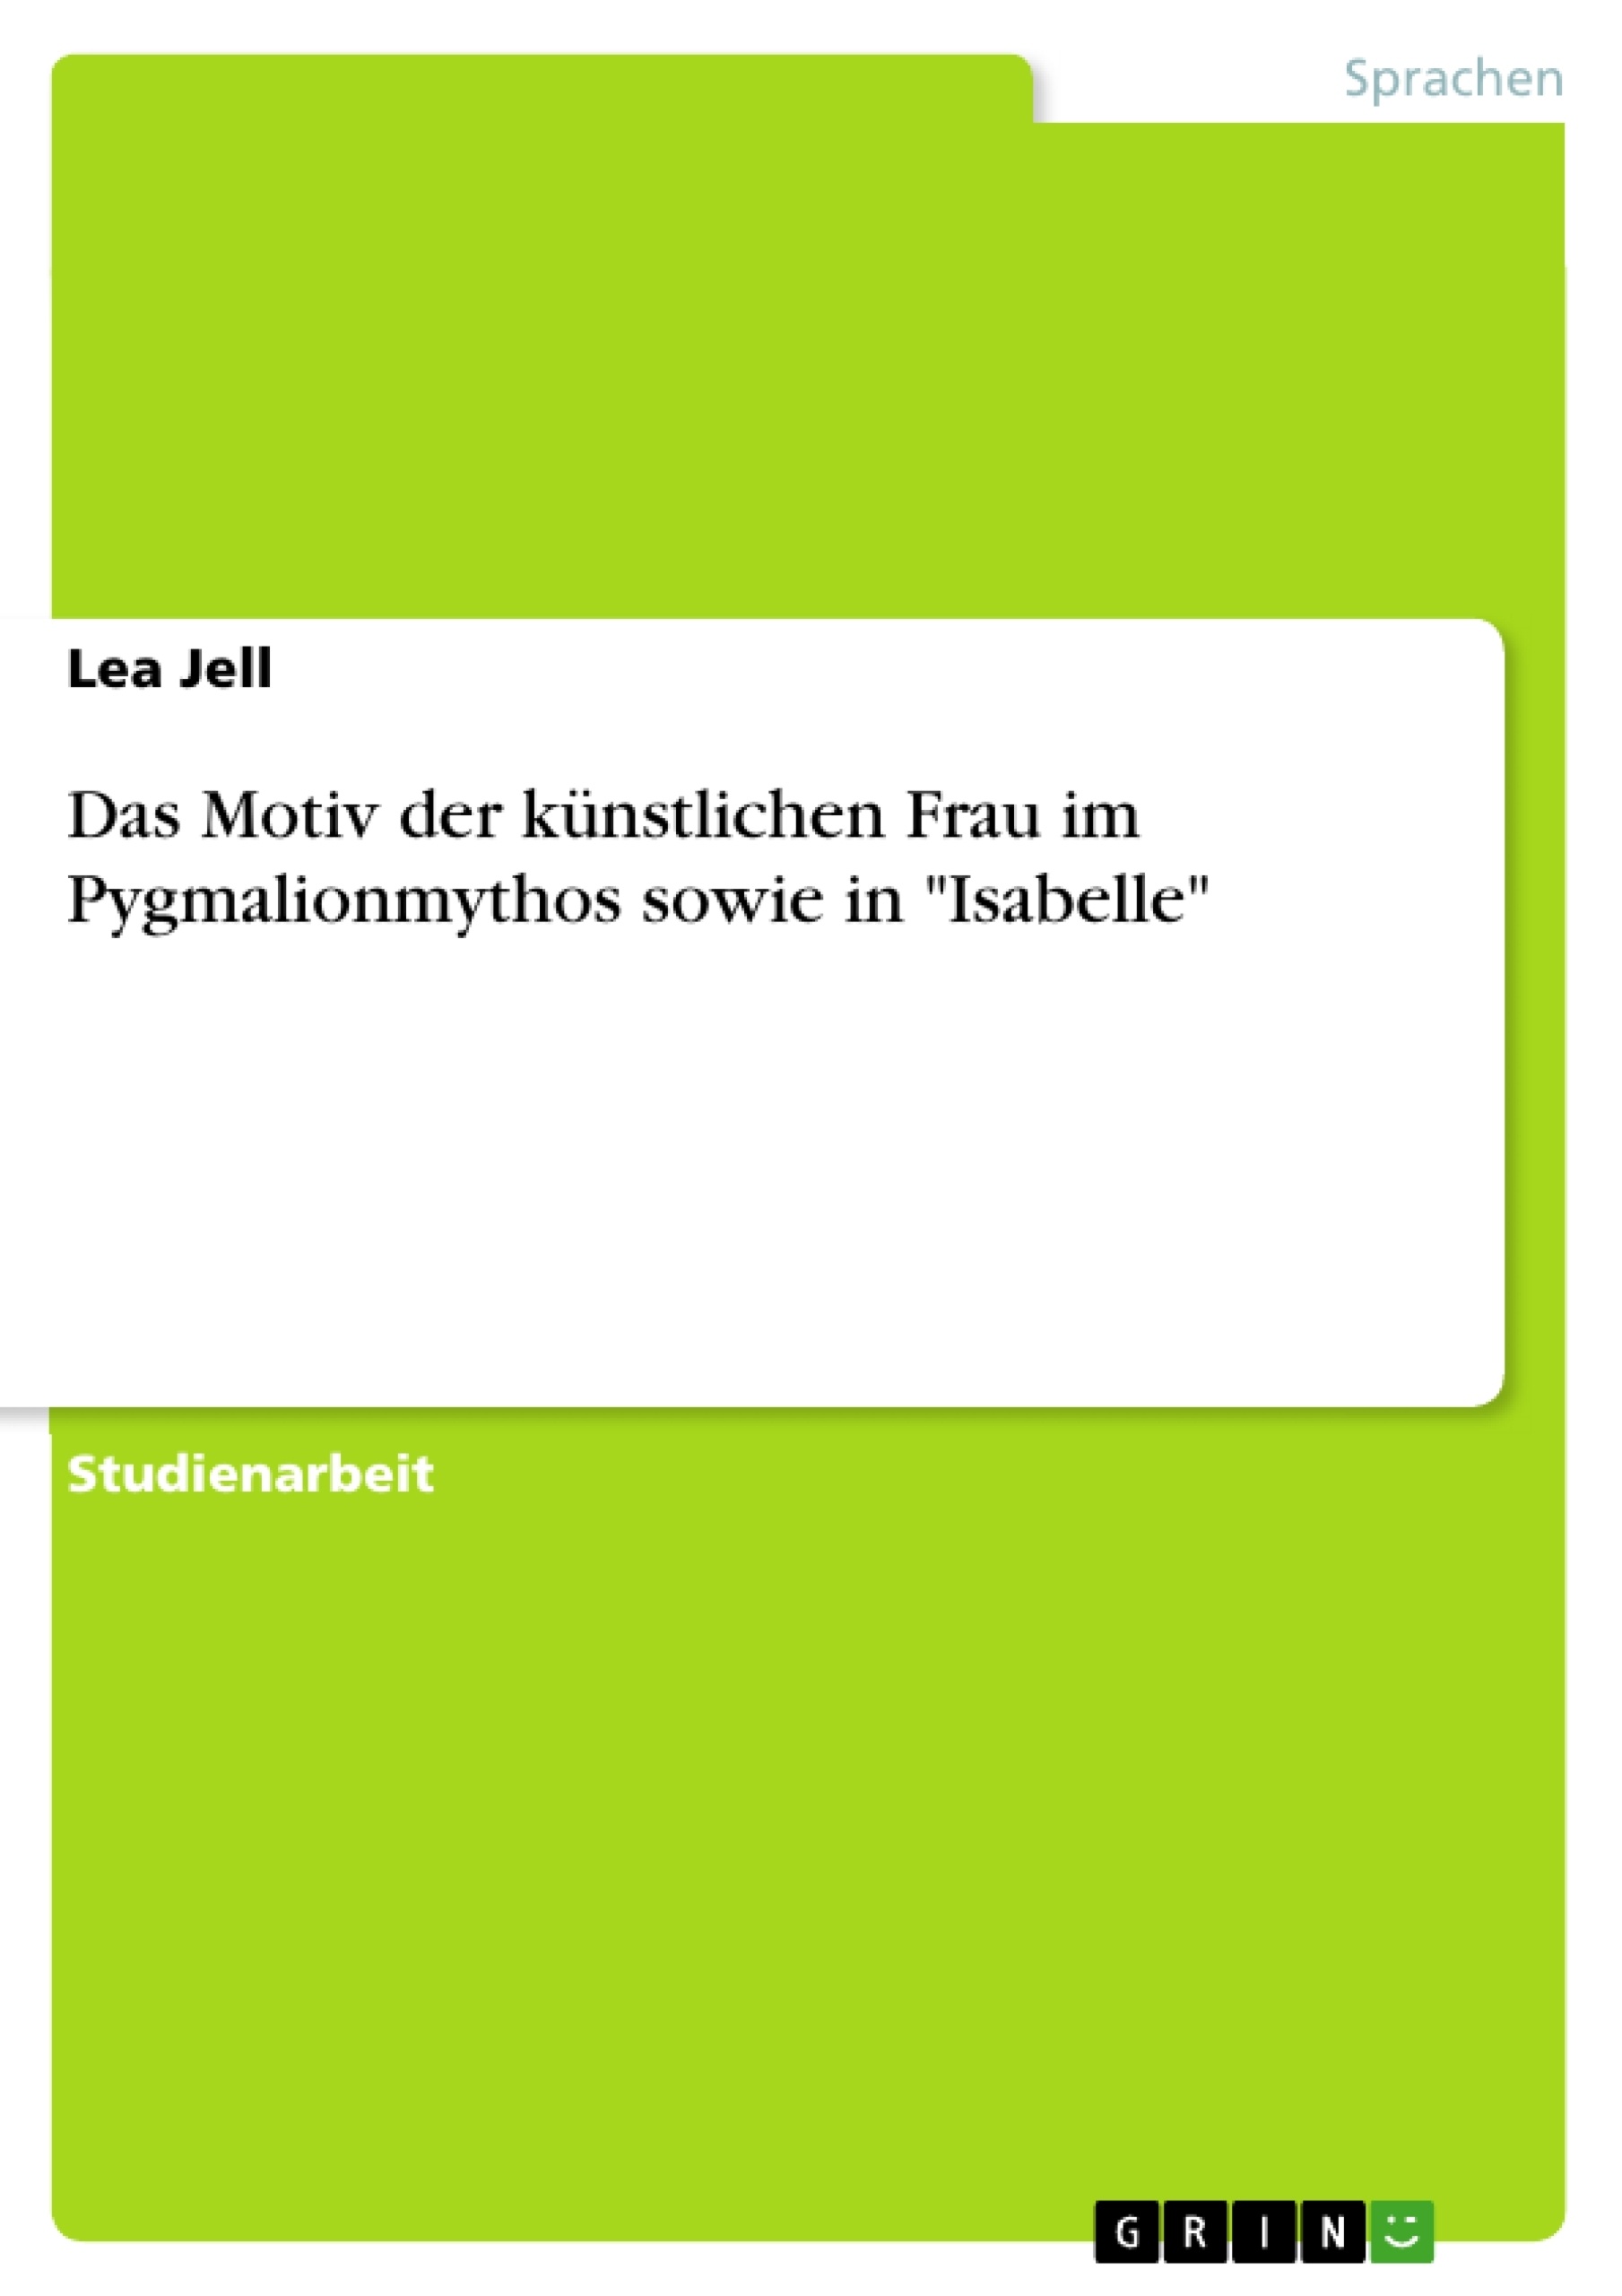 Título: Das Motiv der künstlichen Frau im Pygmalionmythos sowie in "Isabelle"